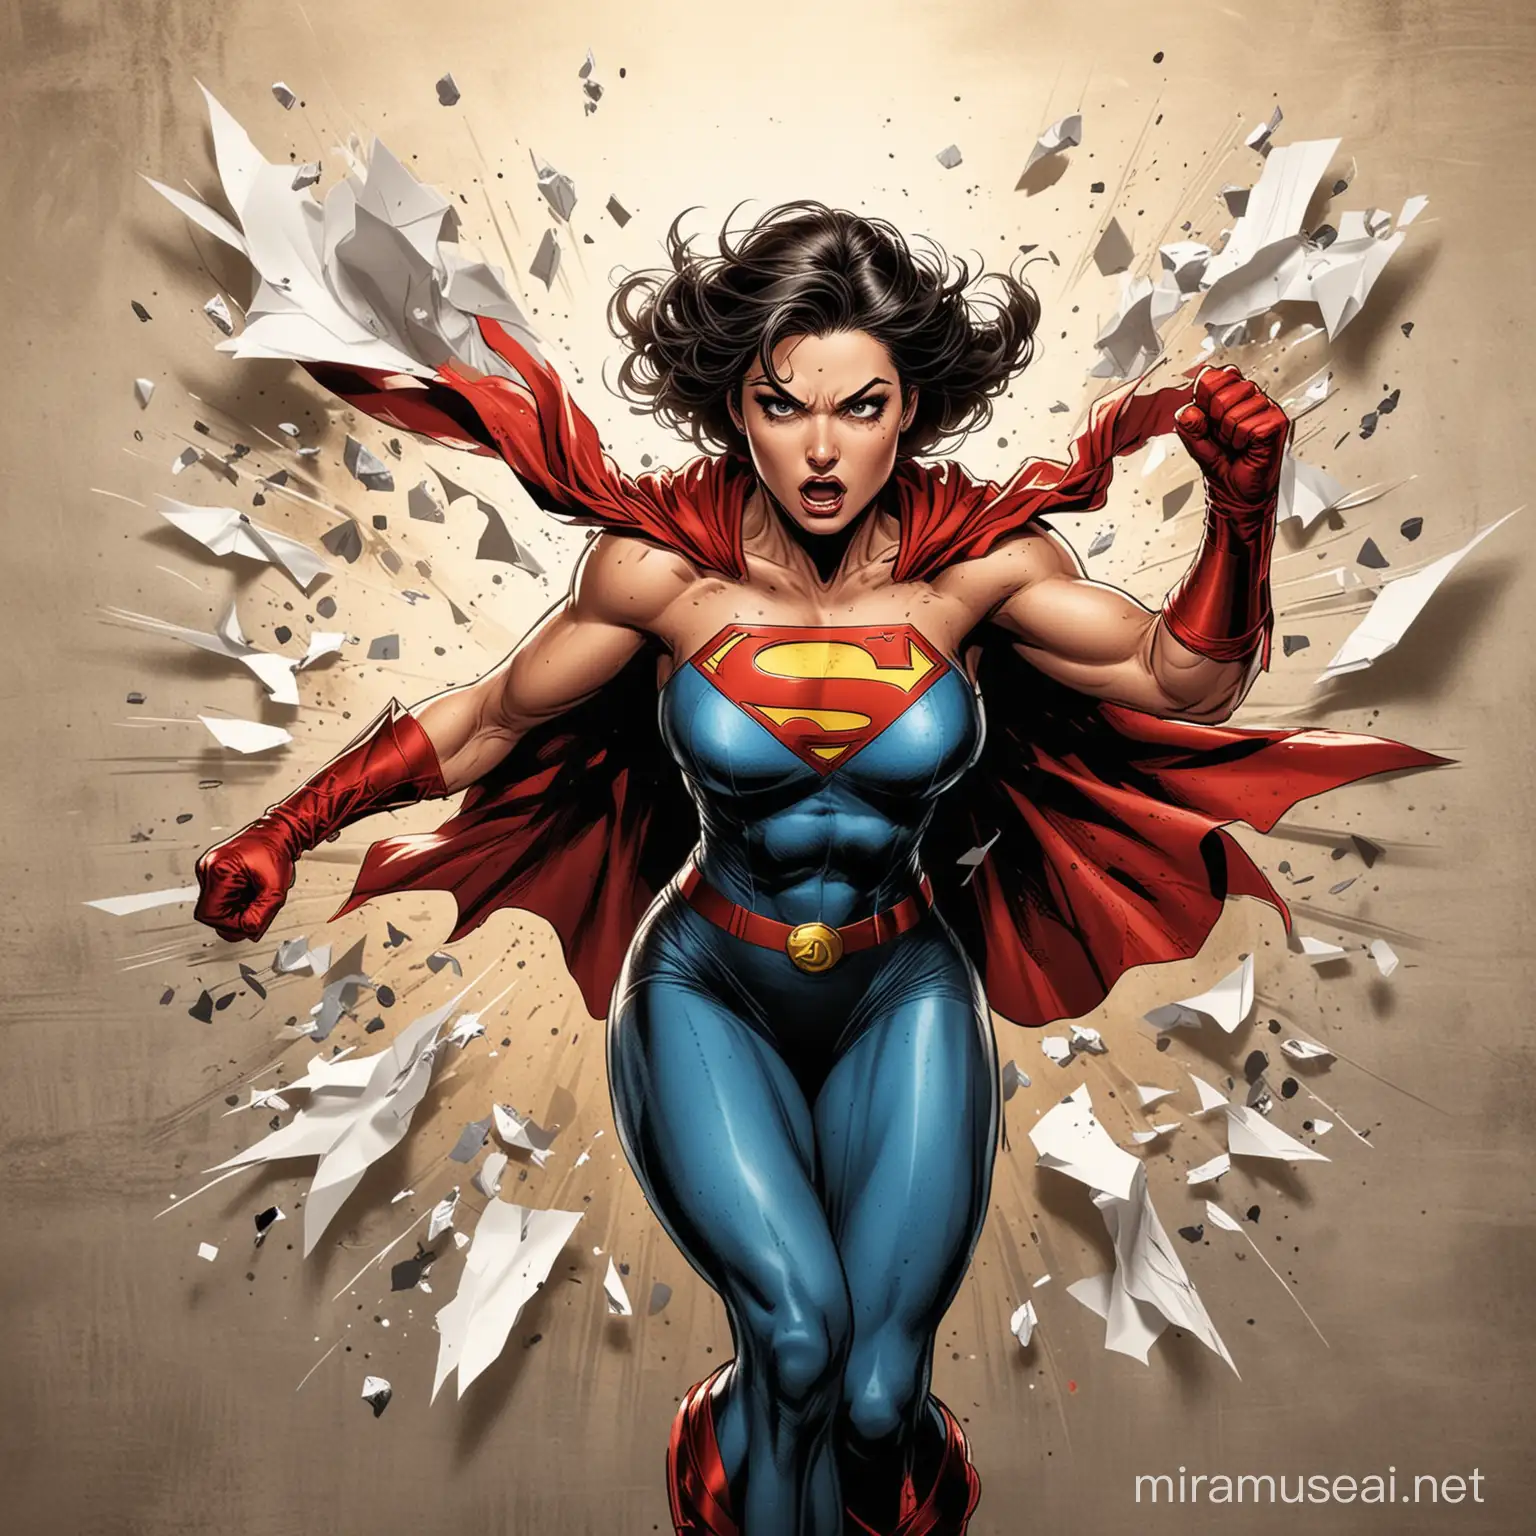 Fierce Female Superhero Ripping Through a Paper Wall